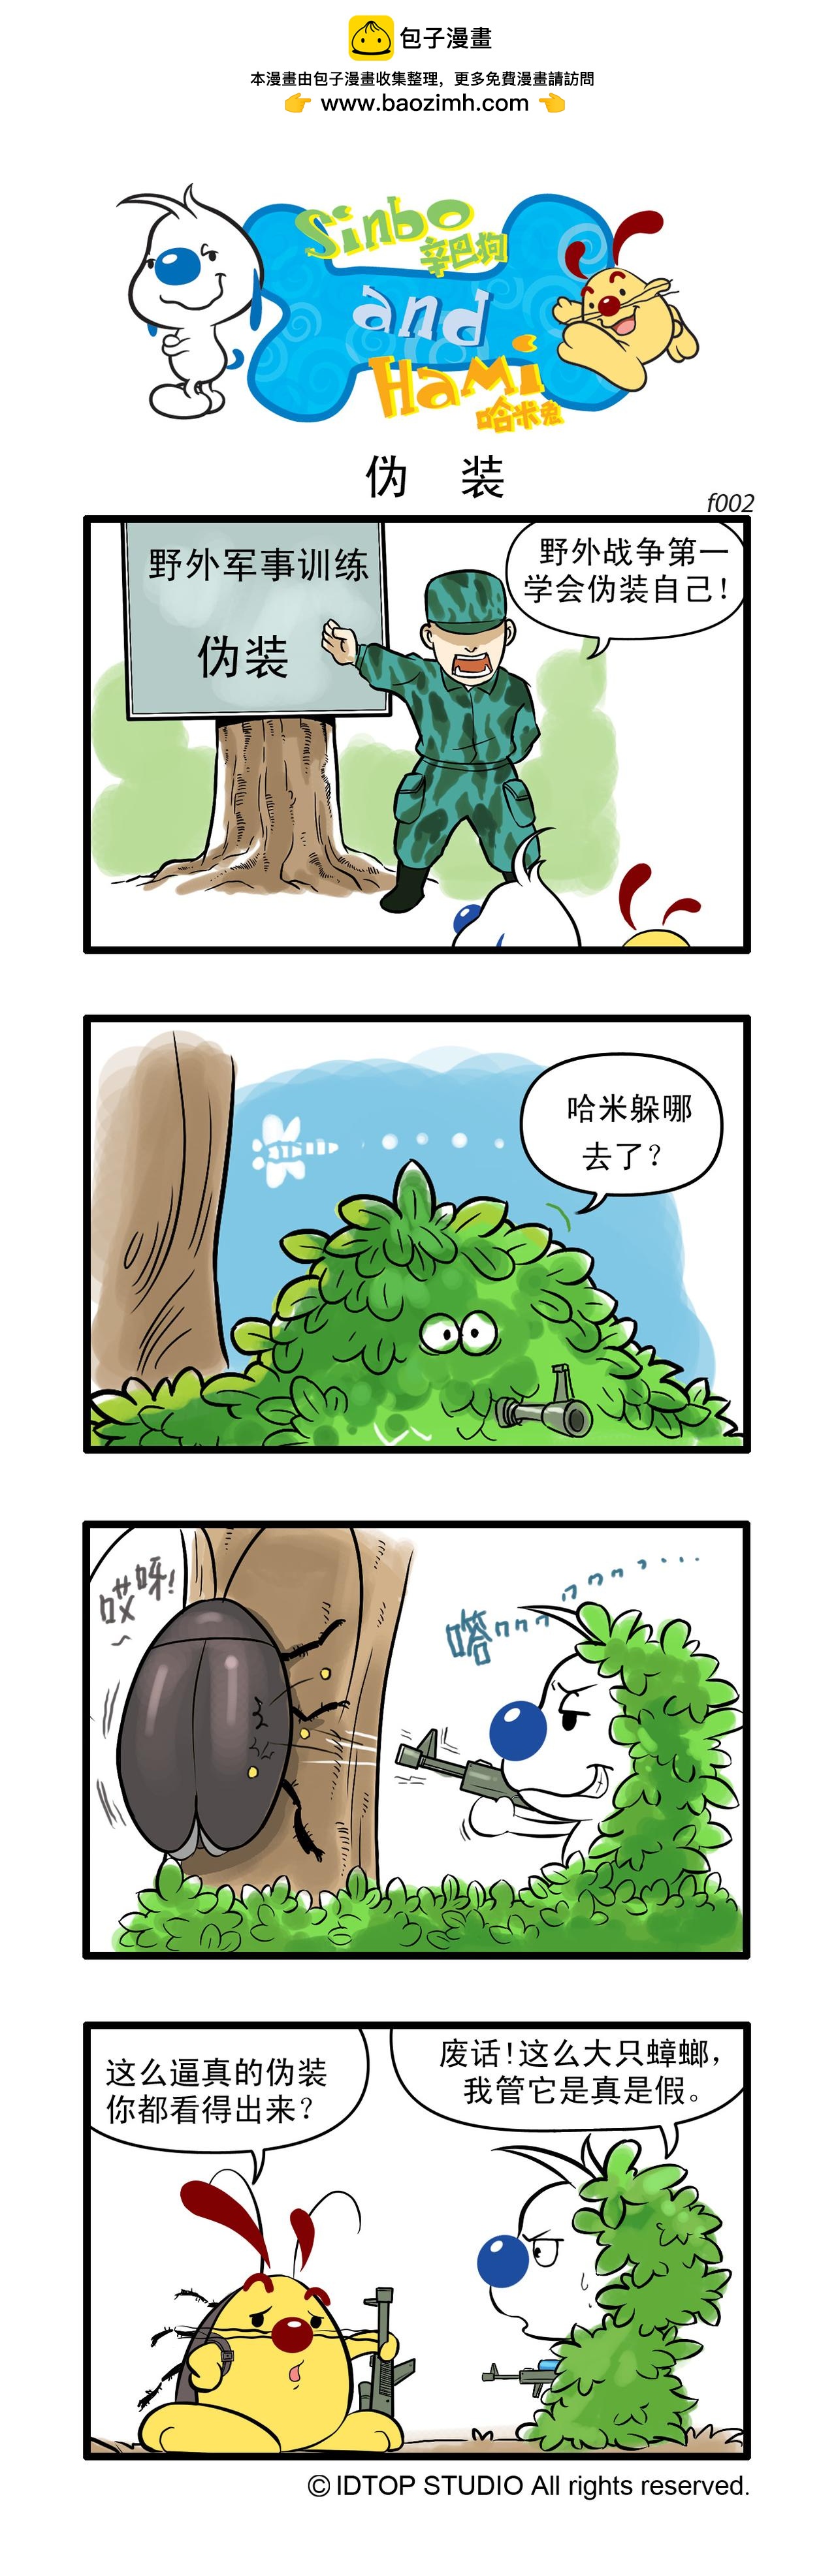 辛巴狗日常漫畫 - 多格1 - 1